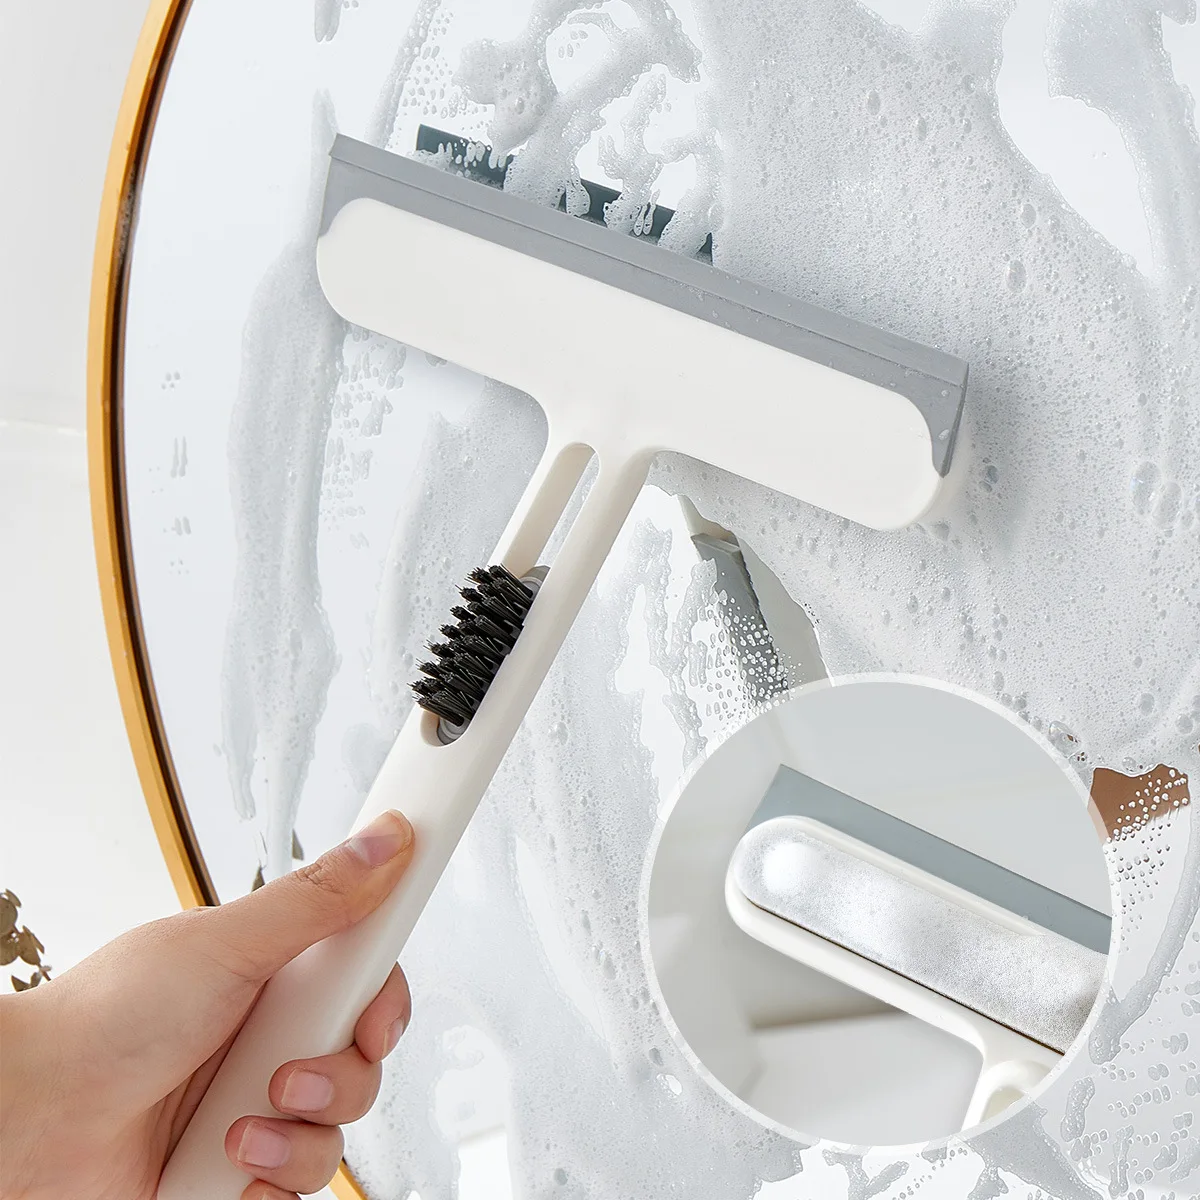 3In1 Shower Squeegee Glass Wiper Scraper Gap Hair Sponge Brush